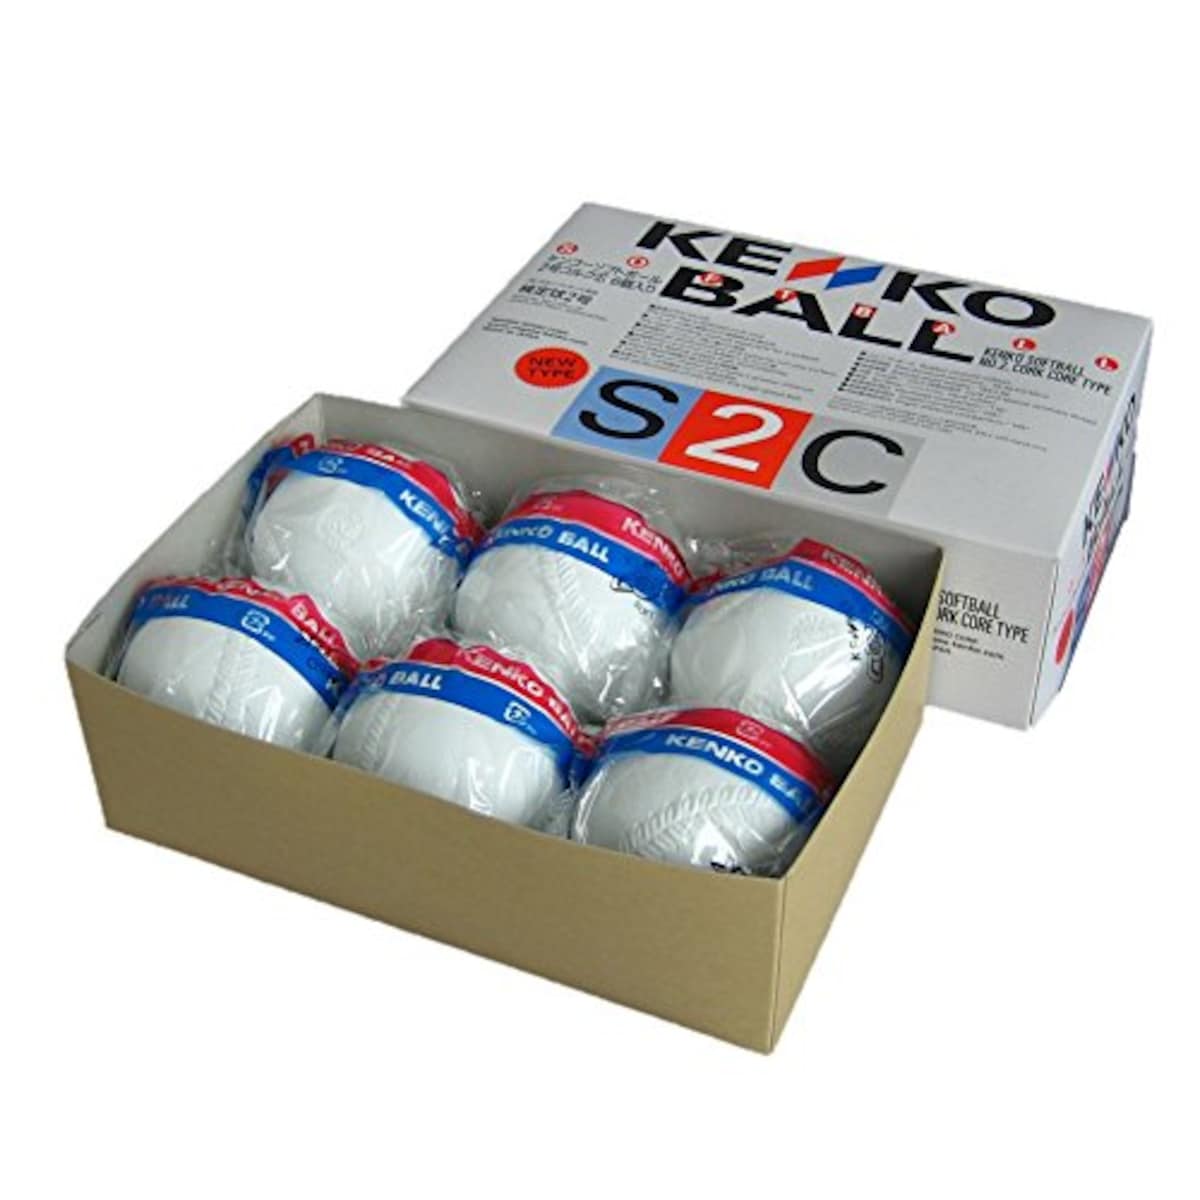  新ケンコーソフトボール2号 コルク芯 1箱(6個) S2C-NEW画像2 